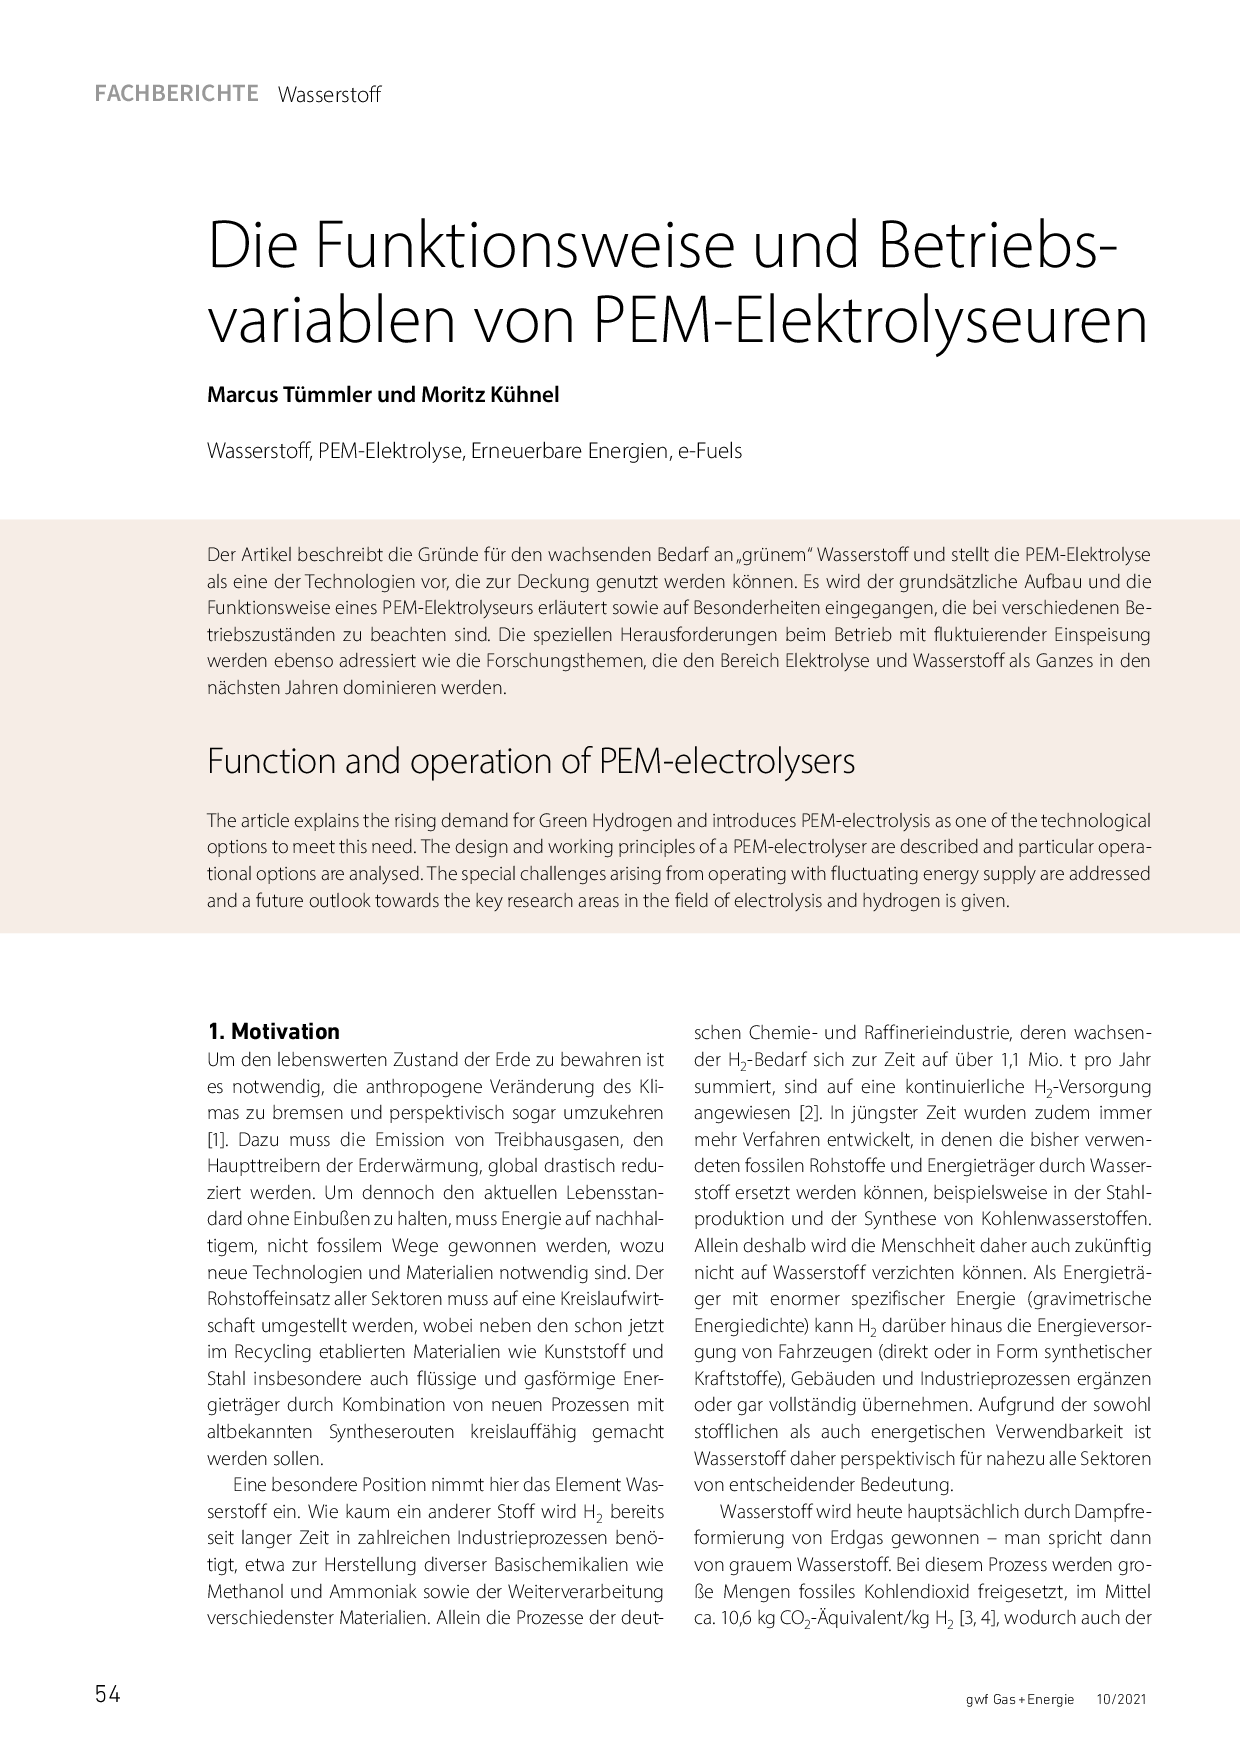 Die Funktionsweise und Betriebsvariablen von PEM-Elektrolyseuren